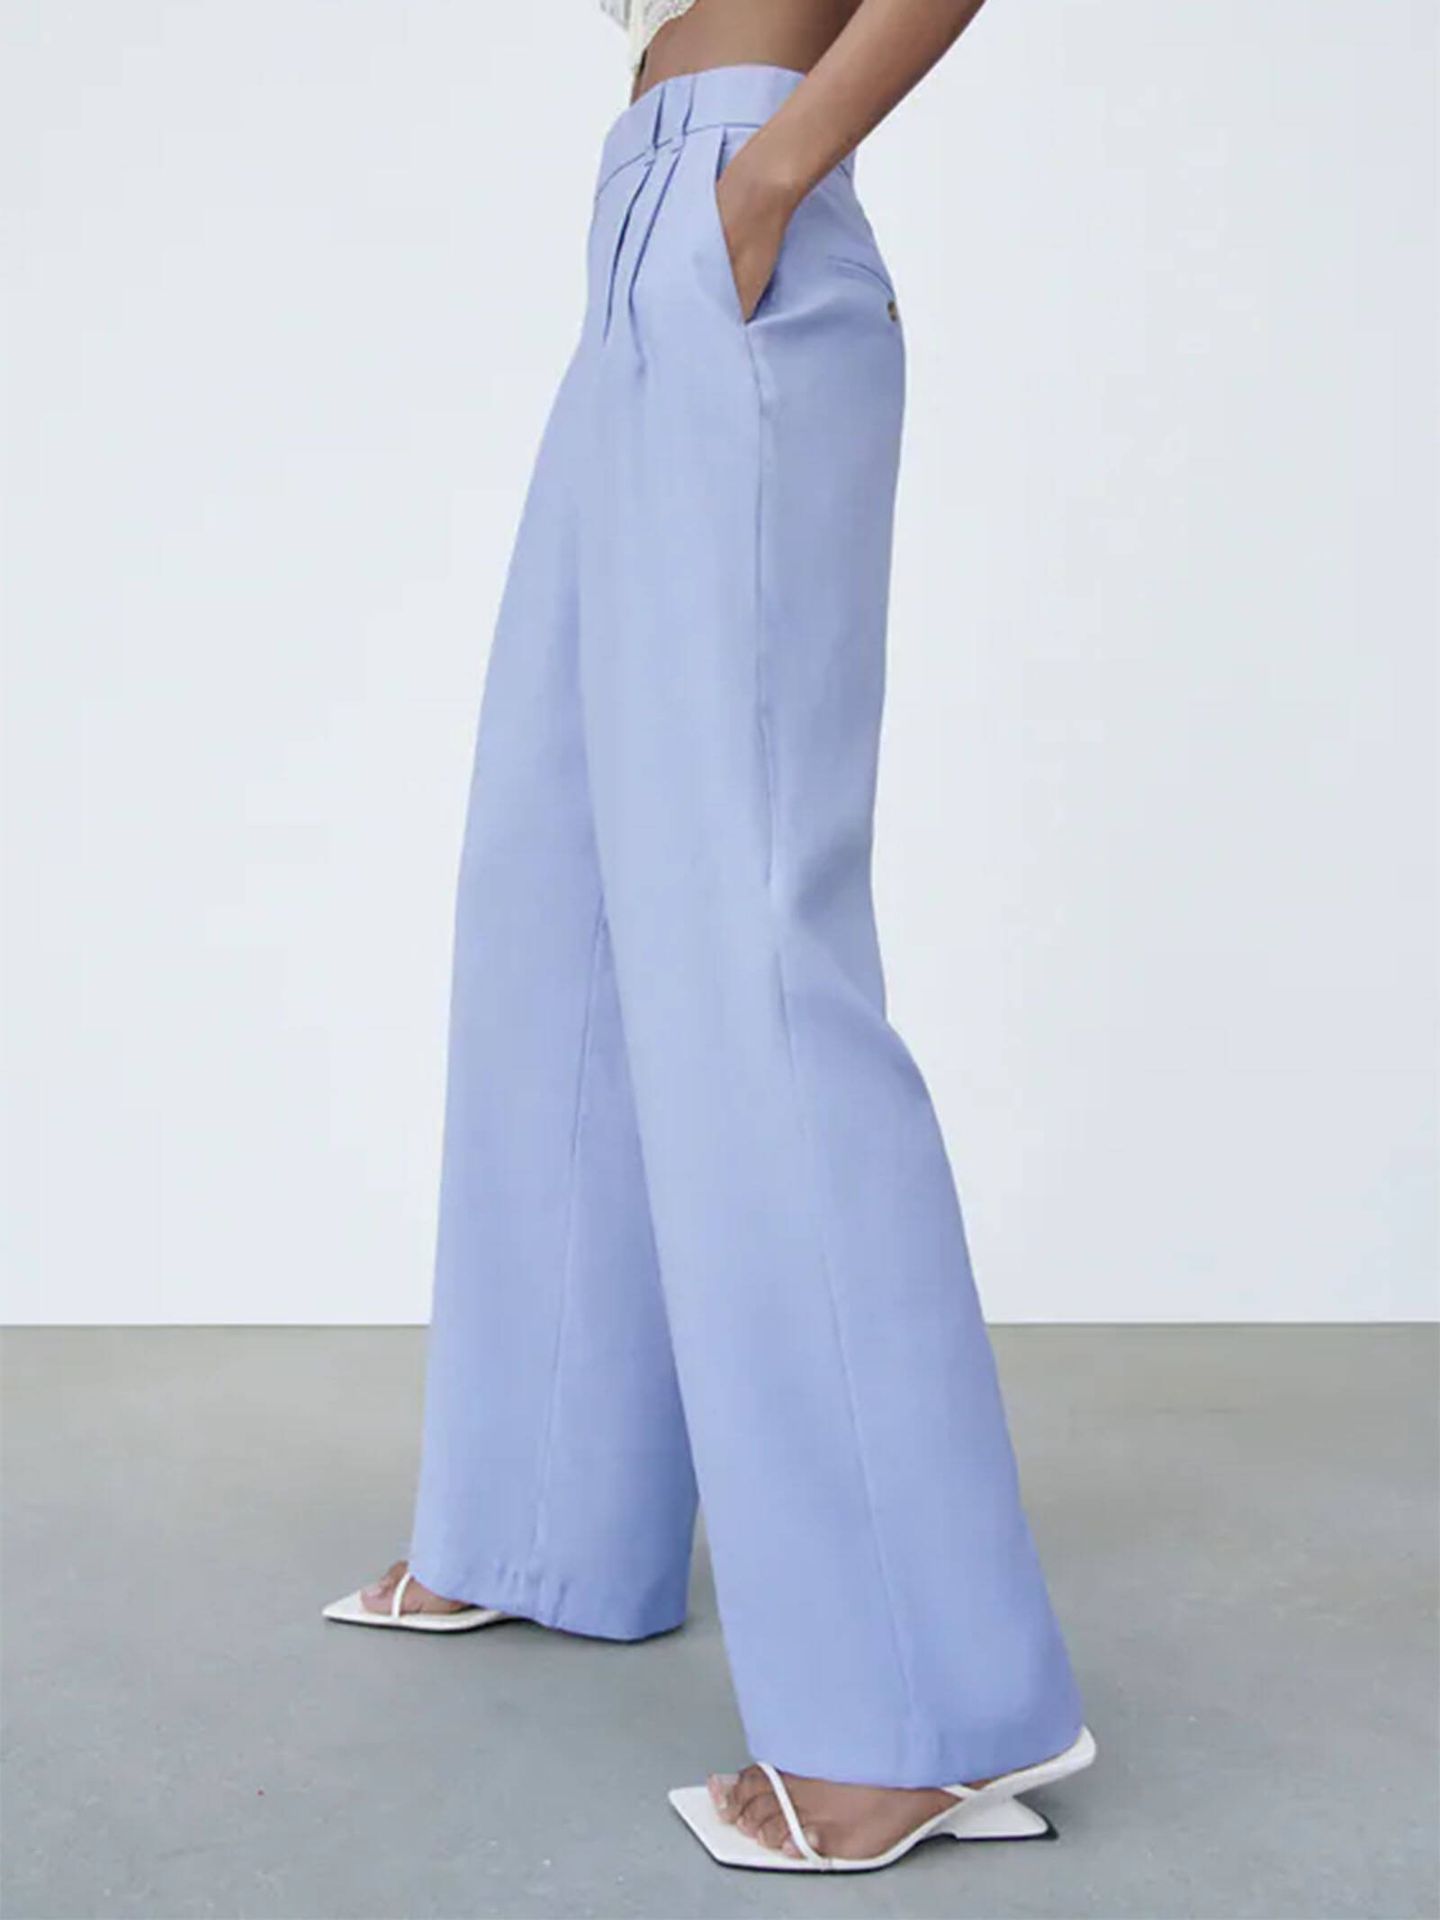 Pantalón en color 'Very Peri' azulado de Zara. (Zara/Cortesía)